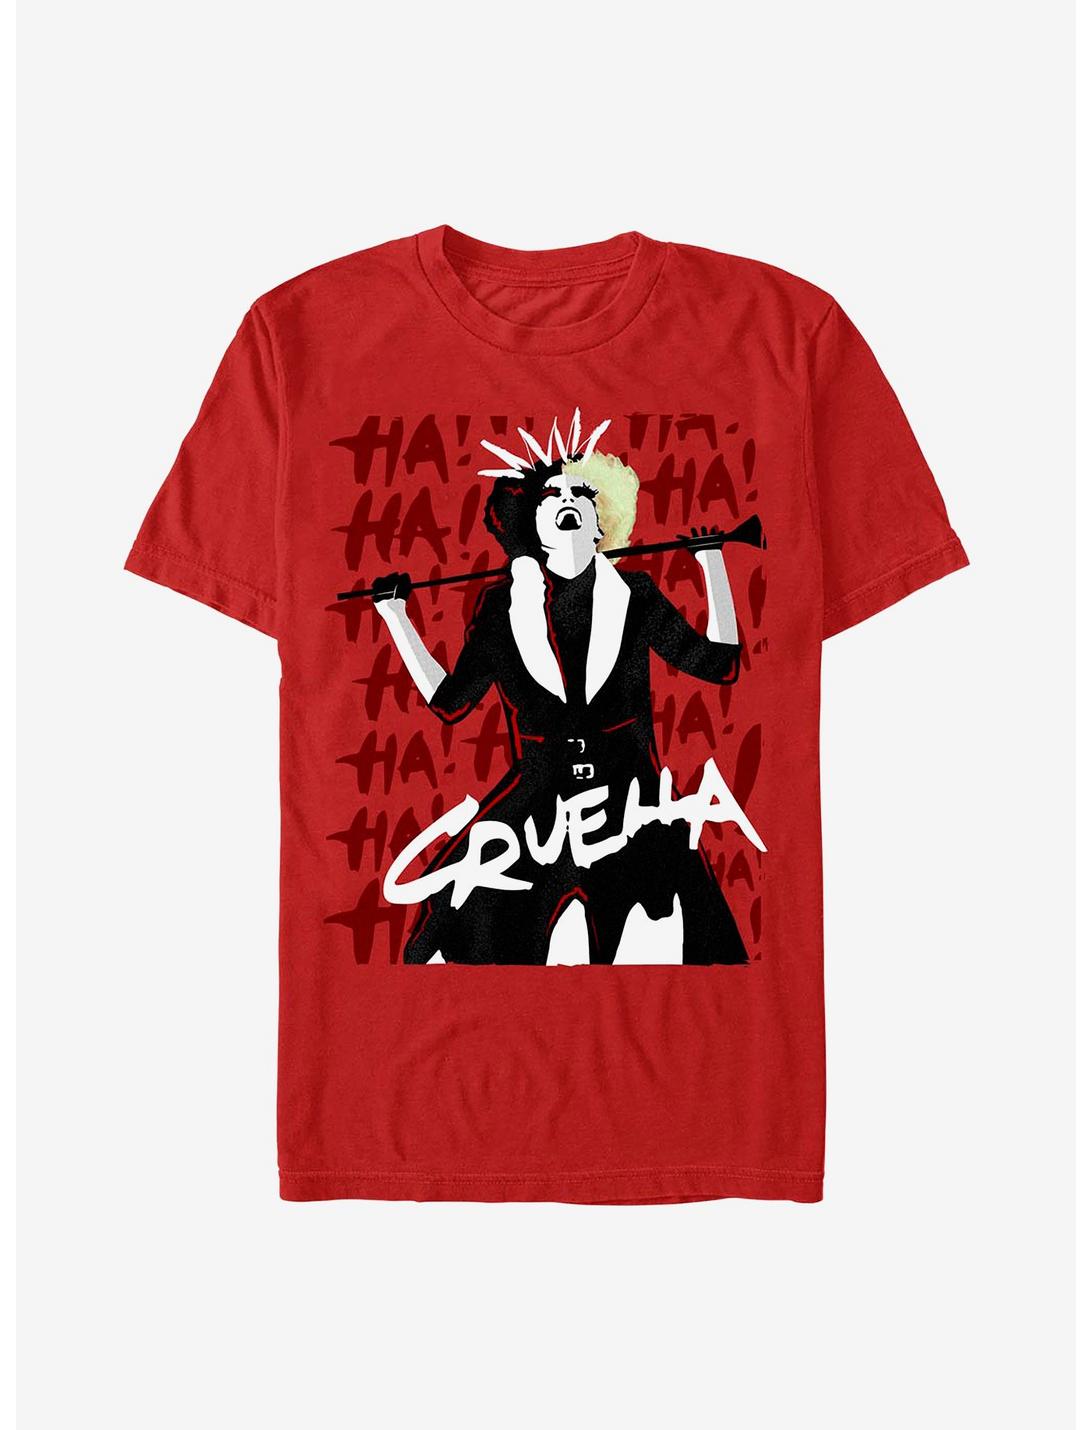 Disney Cruella Cruel Laughter T-Shirt Hot Topic Exclusive, RED, hi-res